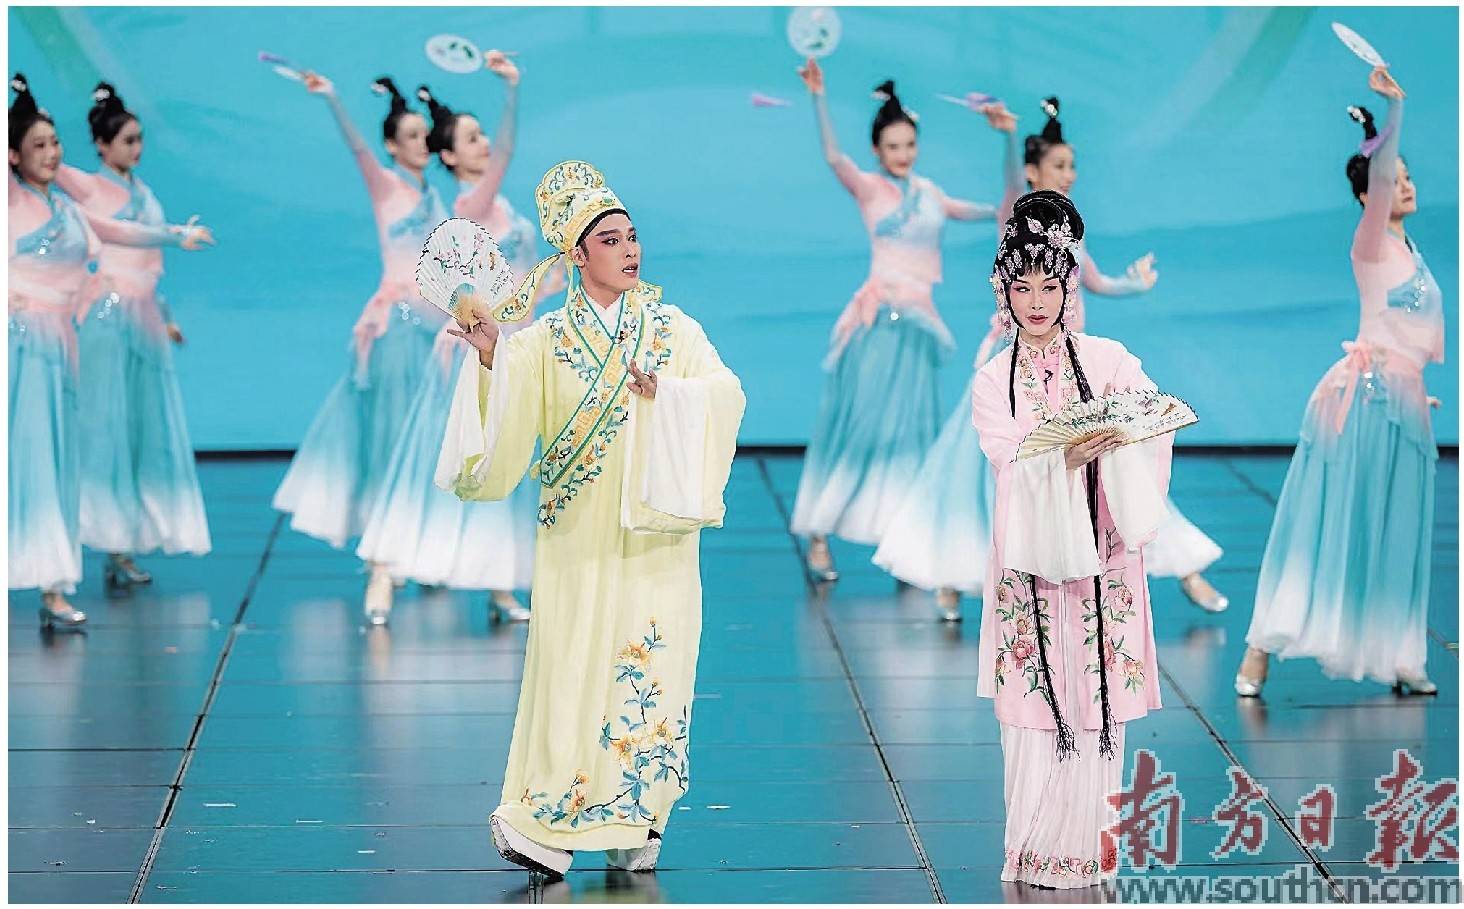 广东潮剧院90后演员演绎的《苏六娘》经典选段,是潮剧首次登上央视